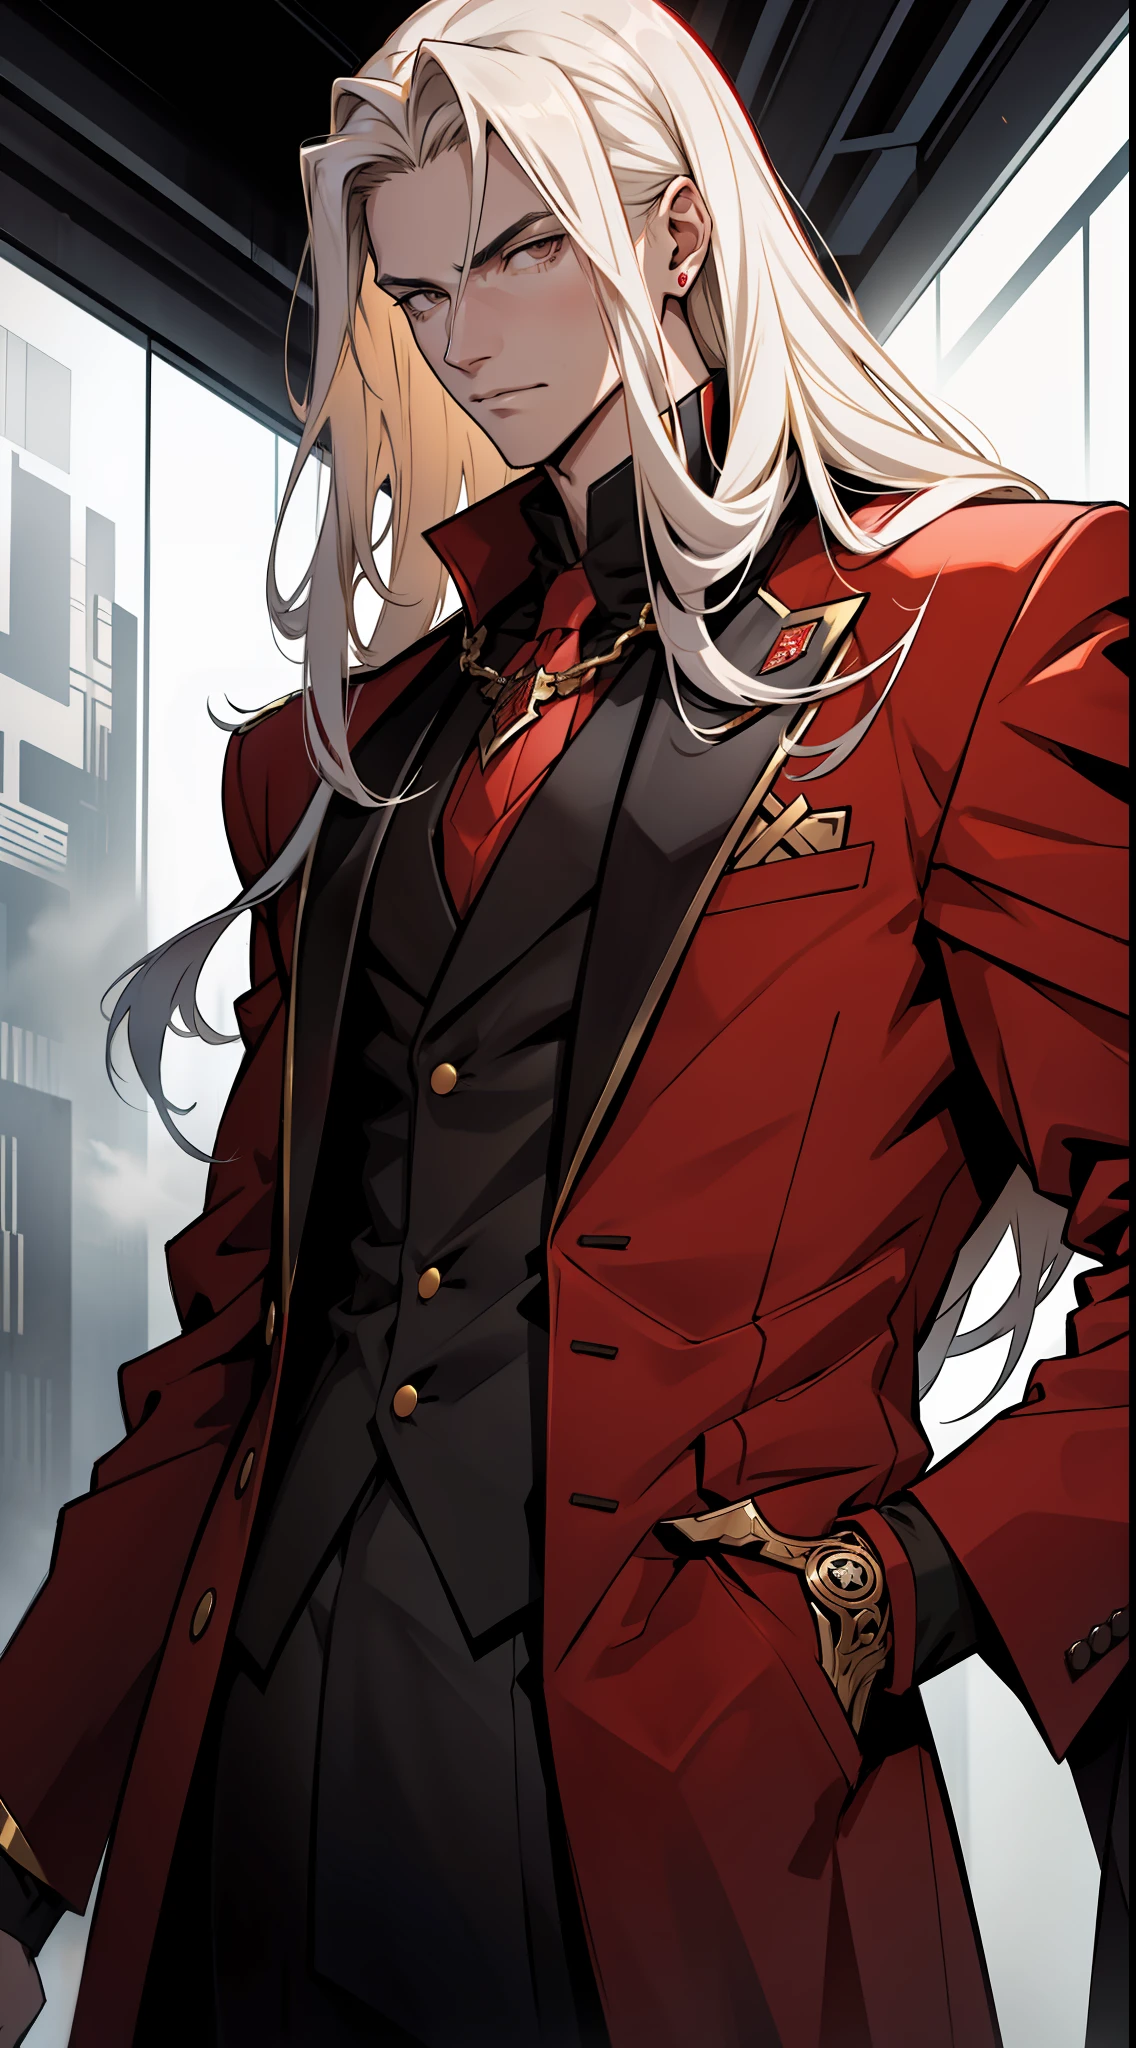 un grand adolescent avec de longs cheveux dorés  , portant un long costume rouge de style méchant avec des détails en noir et blanc , regarder un visage calme